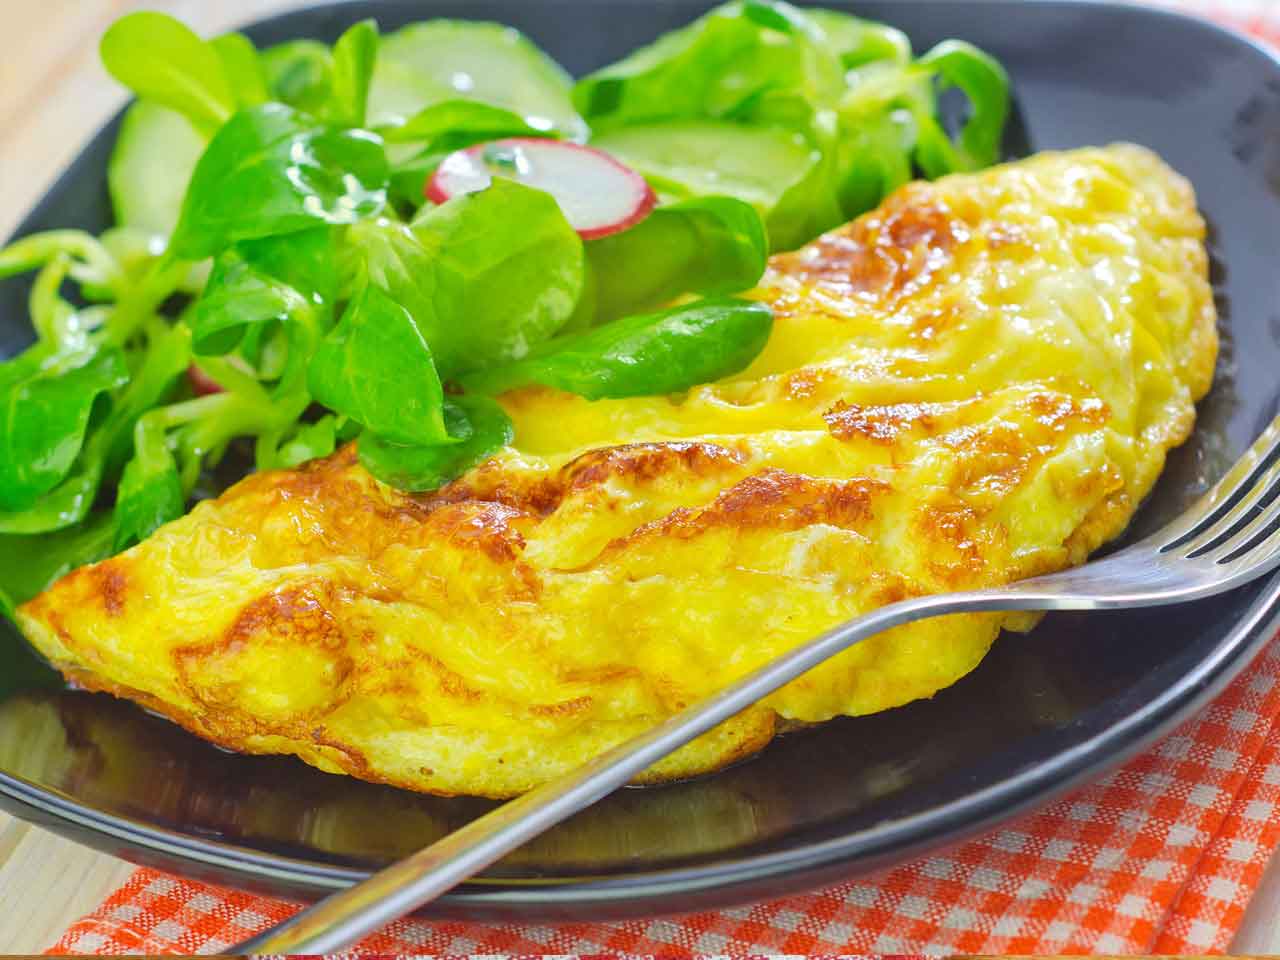 Milujete zeleninu? Pak si určitě pochutnáte na této výborné šunkovo-rajčatové omeletě. Vyzkoušejte připravit ke snídani, zaručujeme úspěch!